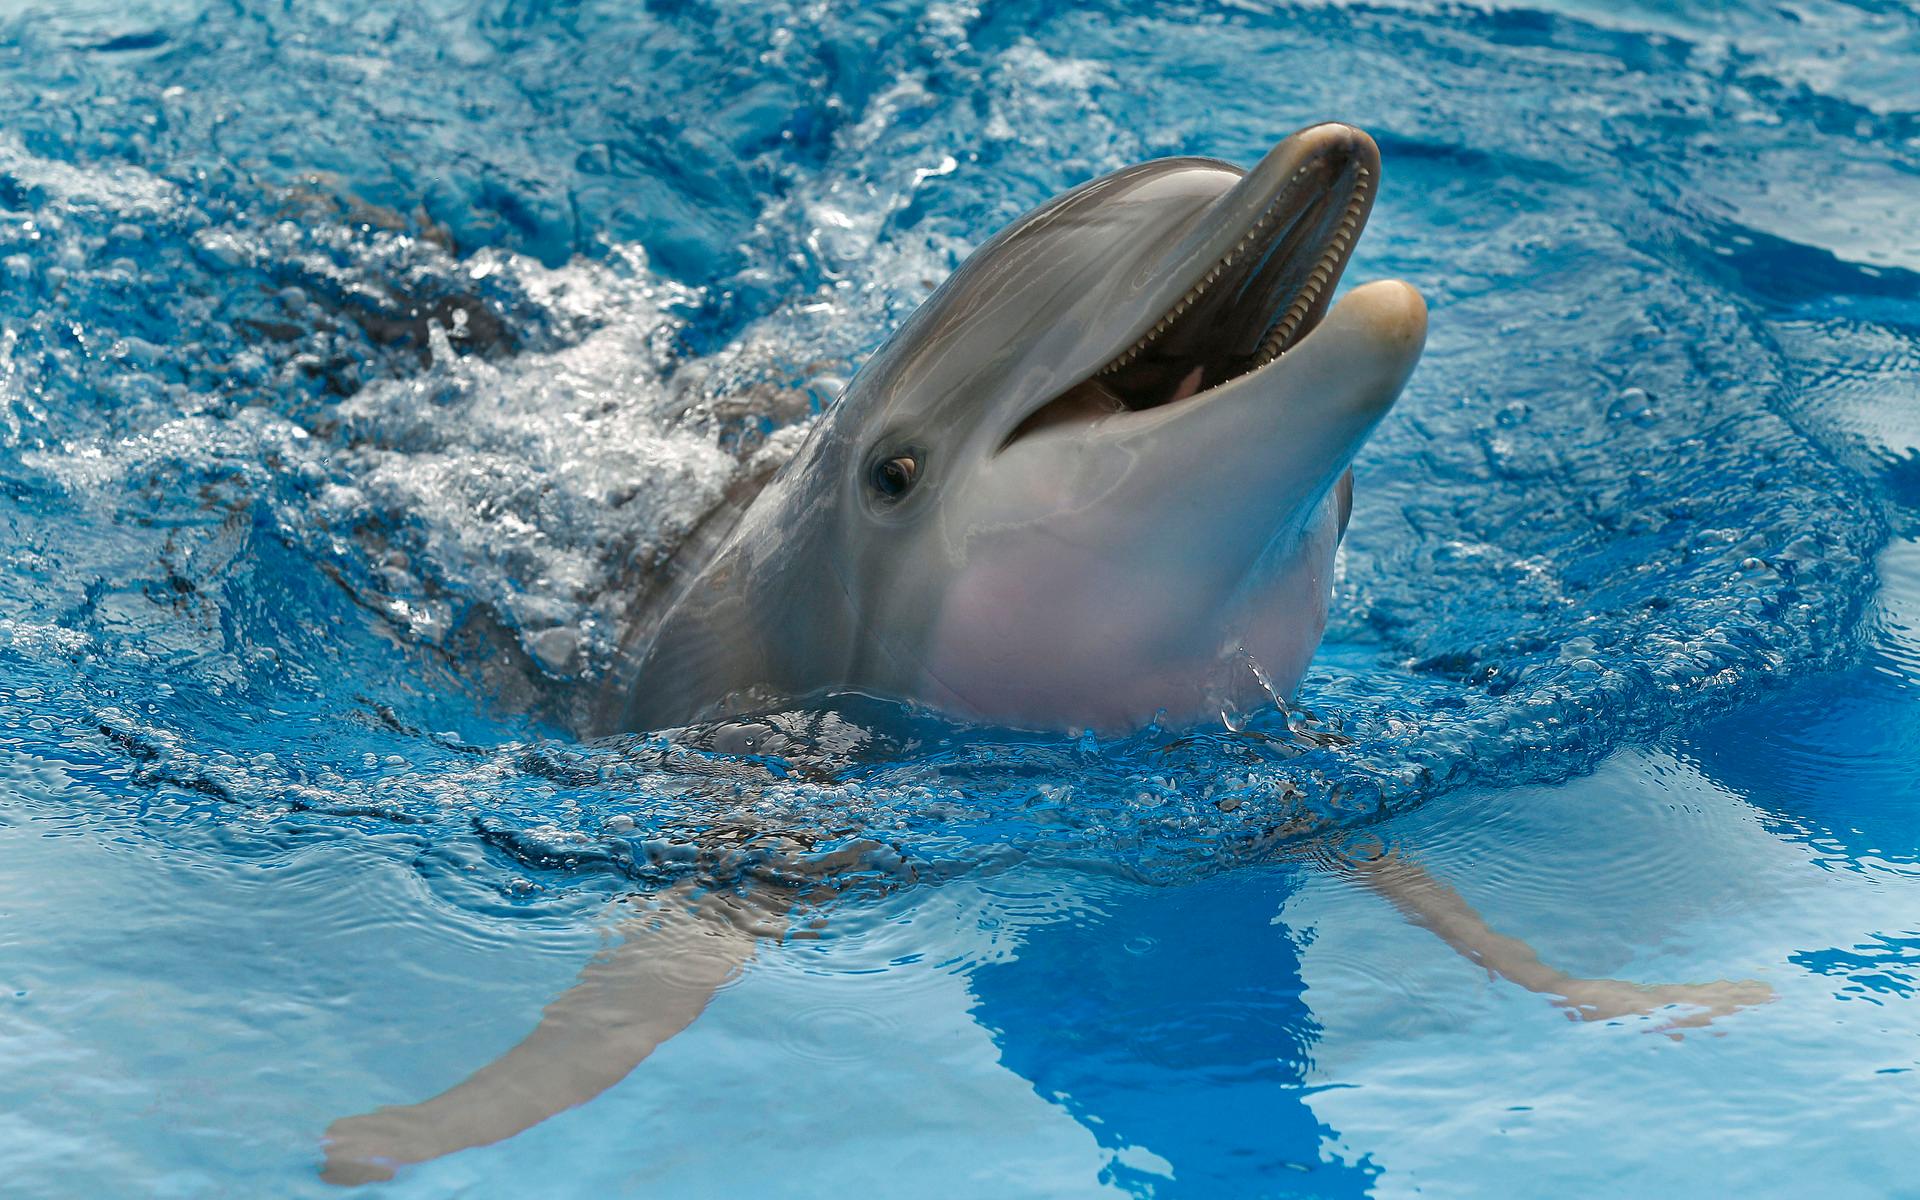 Precis som människor har delfinhonor en fungerade klitoris enligt en vetenskaplig rapport som publicerades i januari 2022. Precis som människor så parar sig delfiner året om, även utanför djurens parningsperiod.